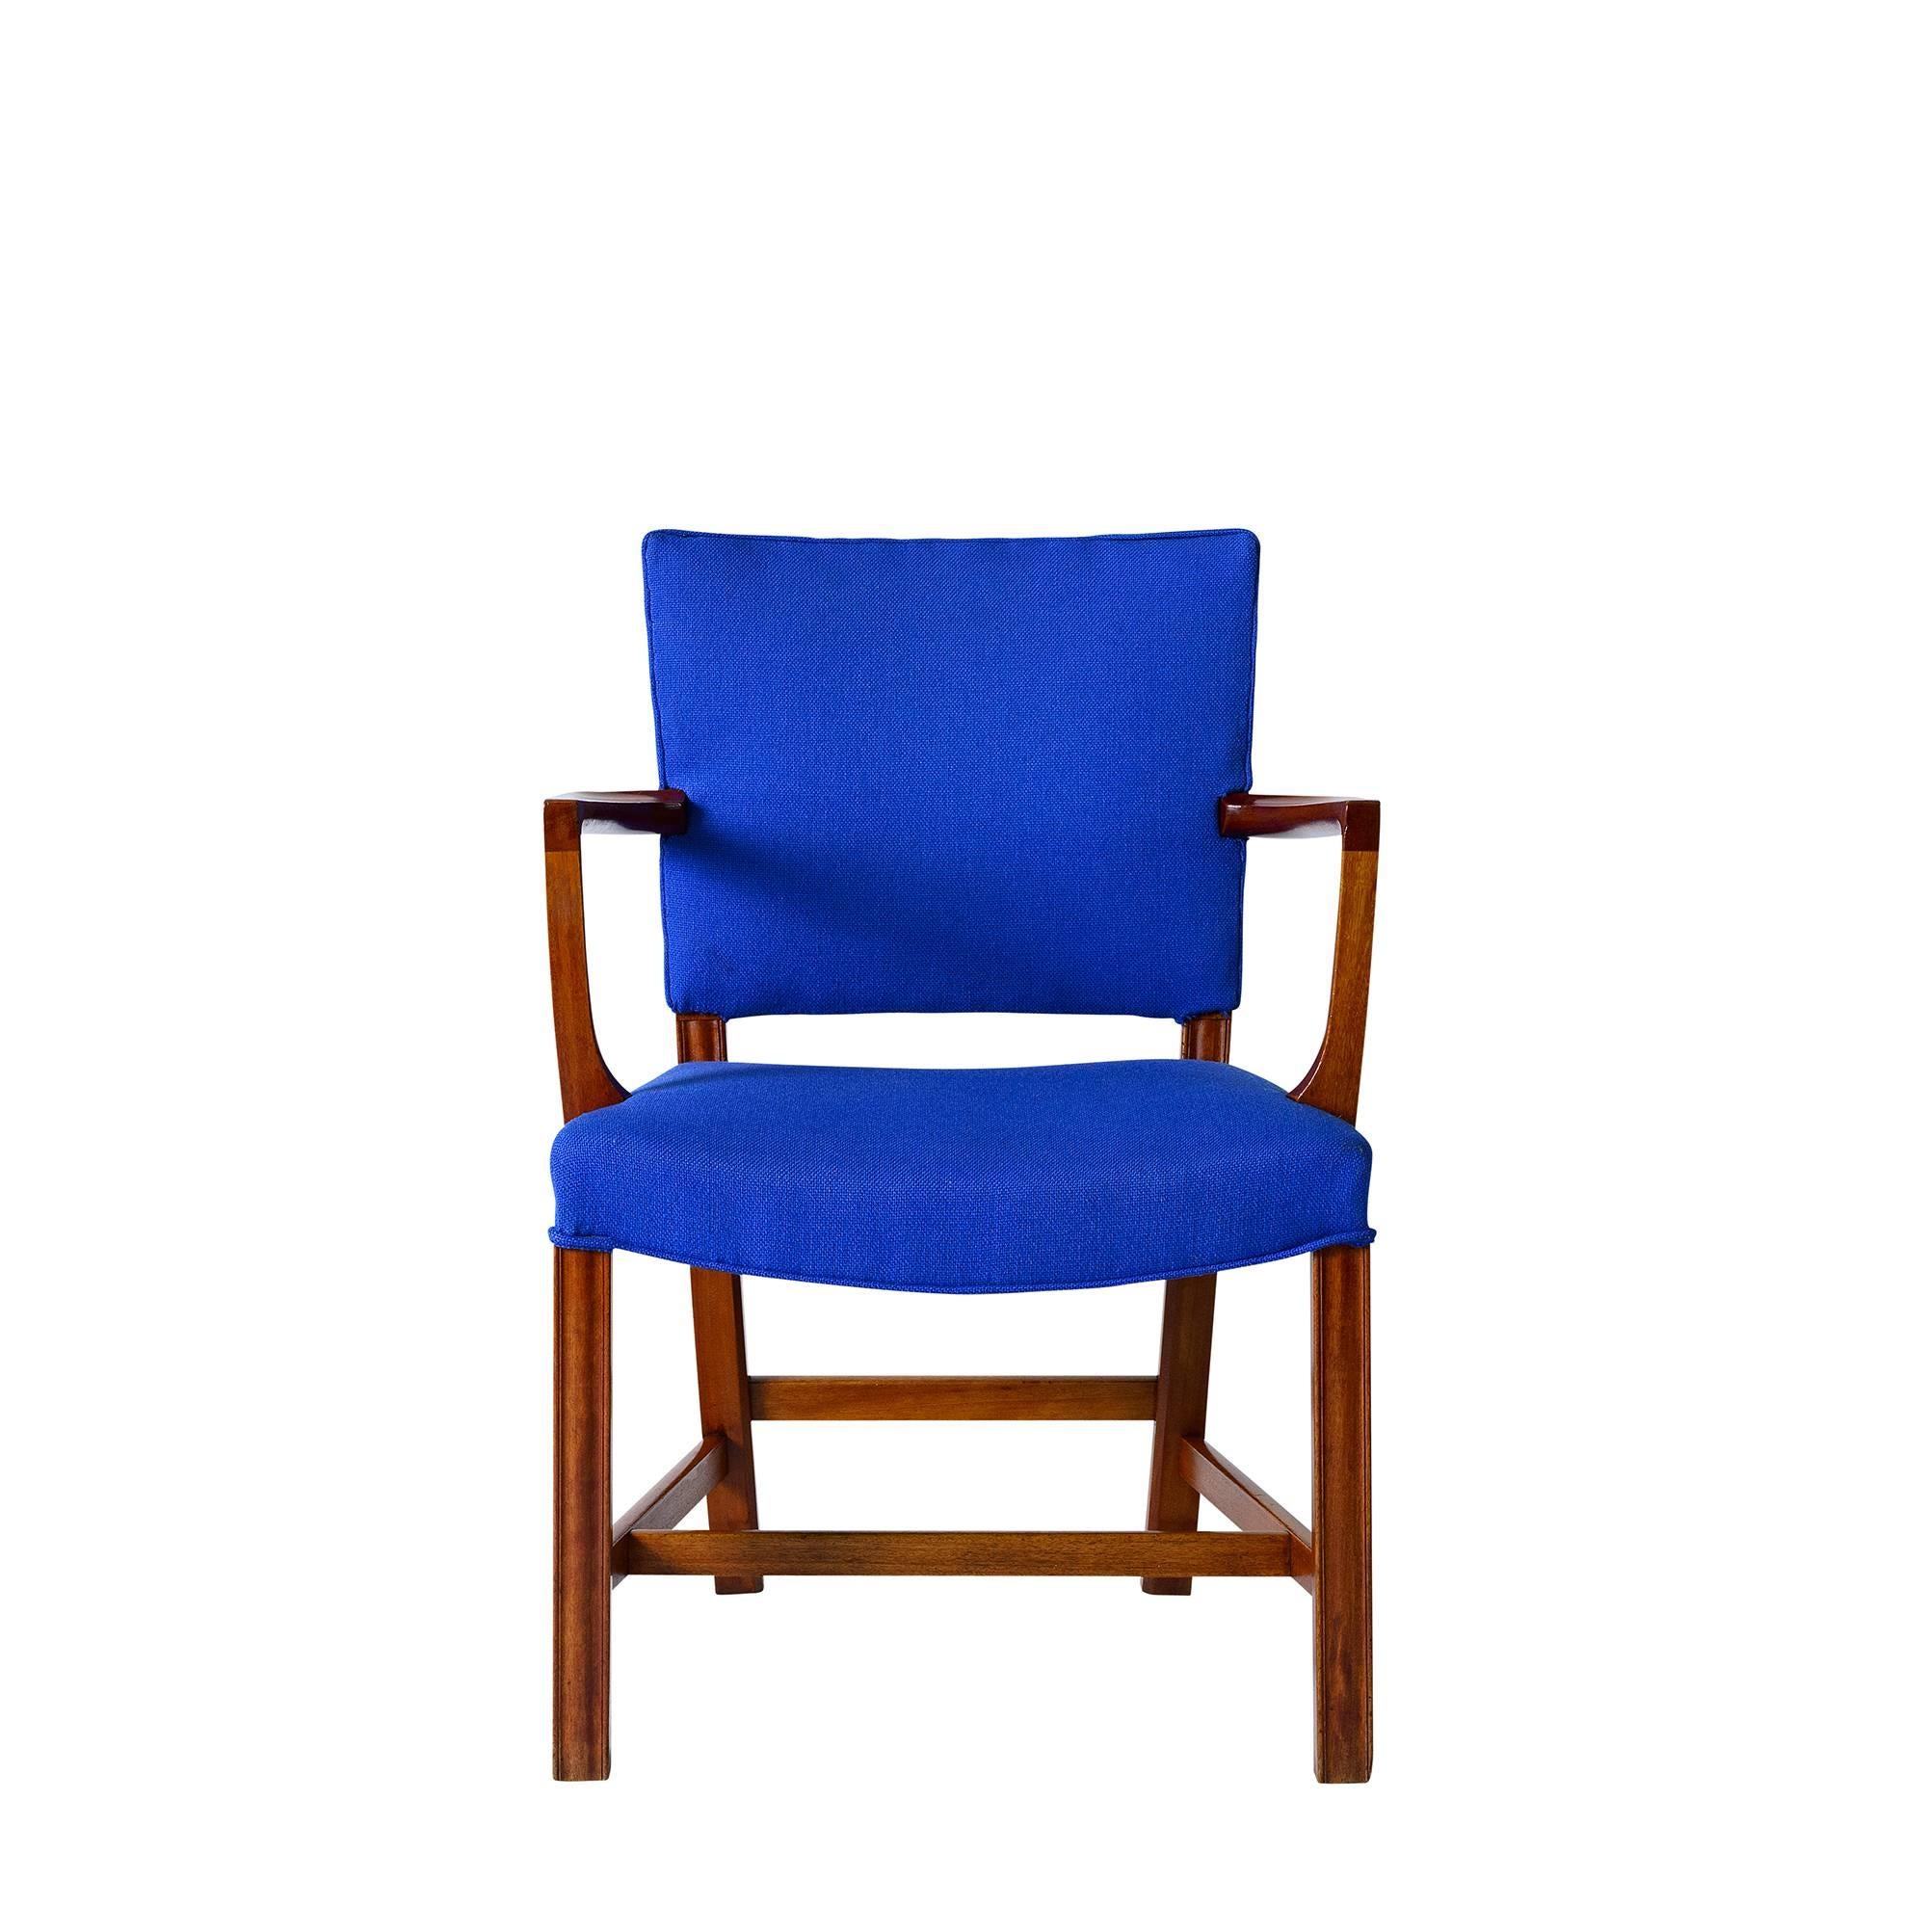 Ensemble de fauteuils Kaare Klint conçus en 1927 et produits par Rud Rasmussen.